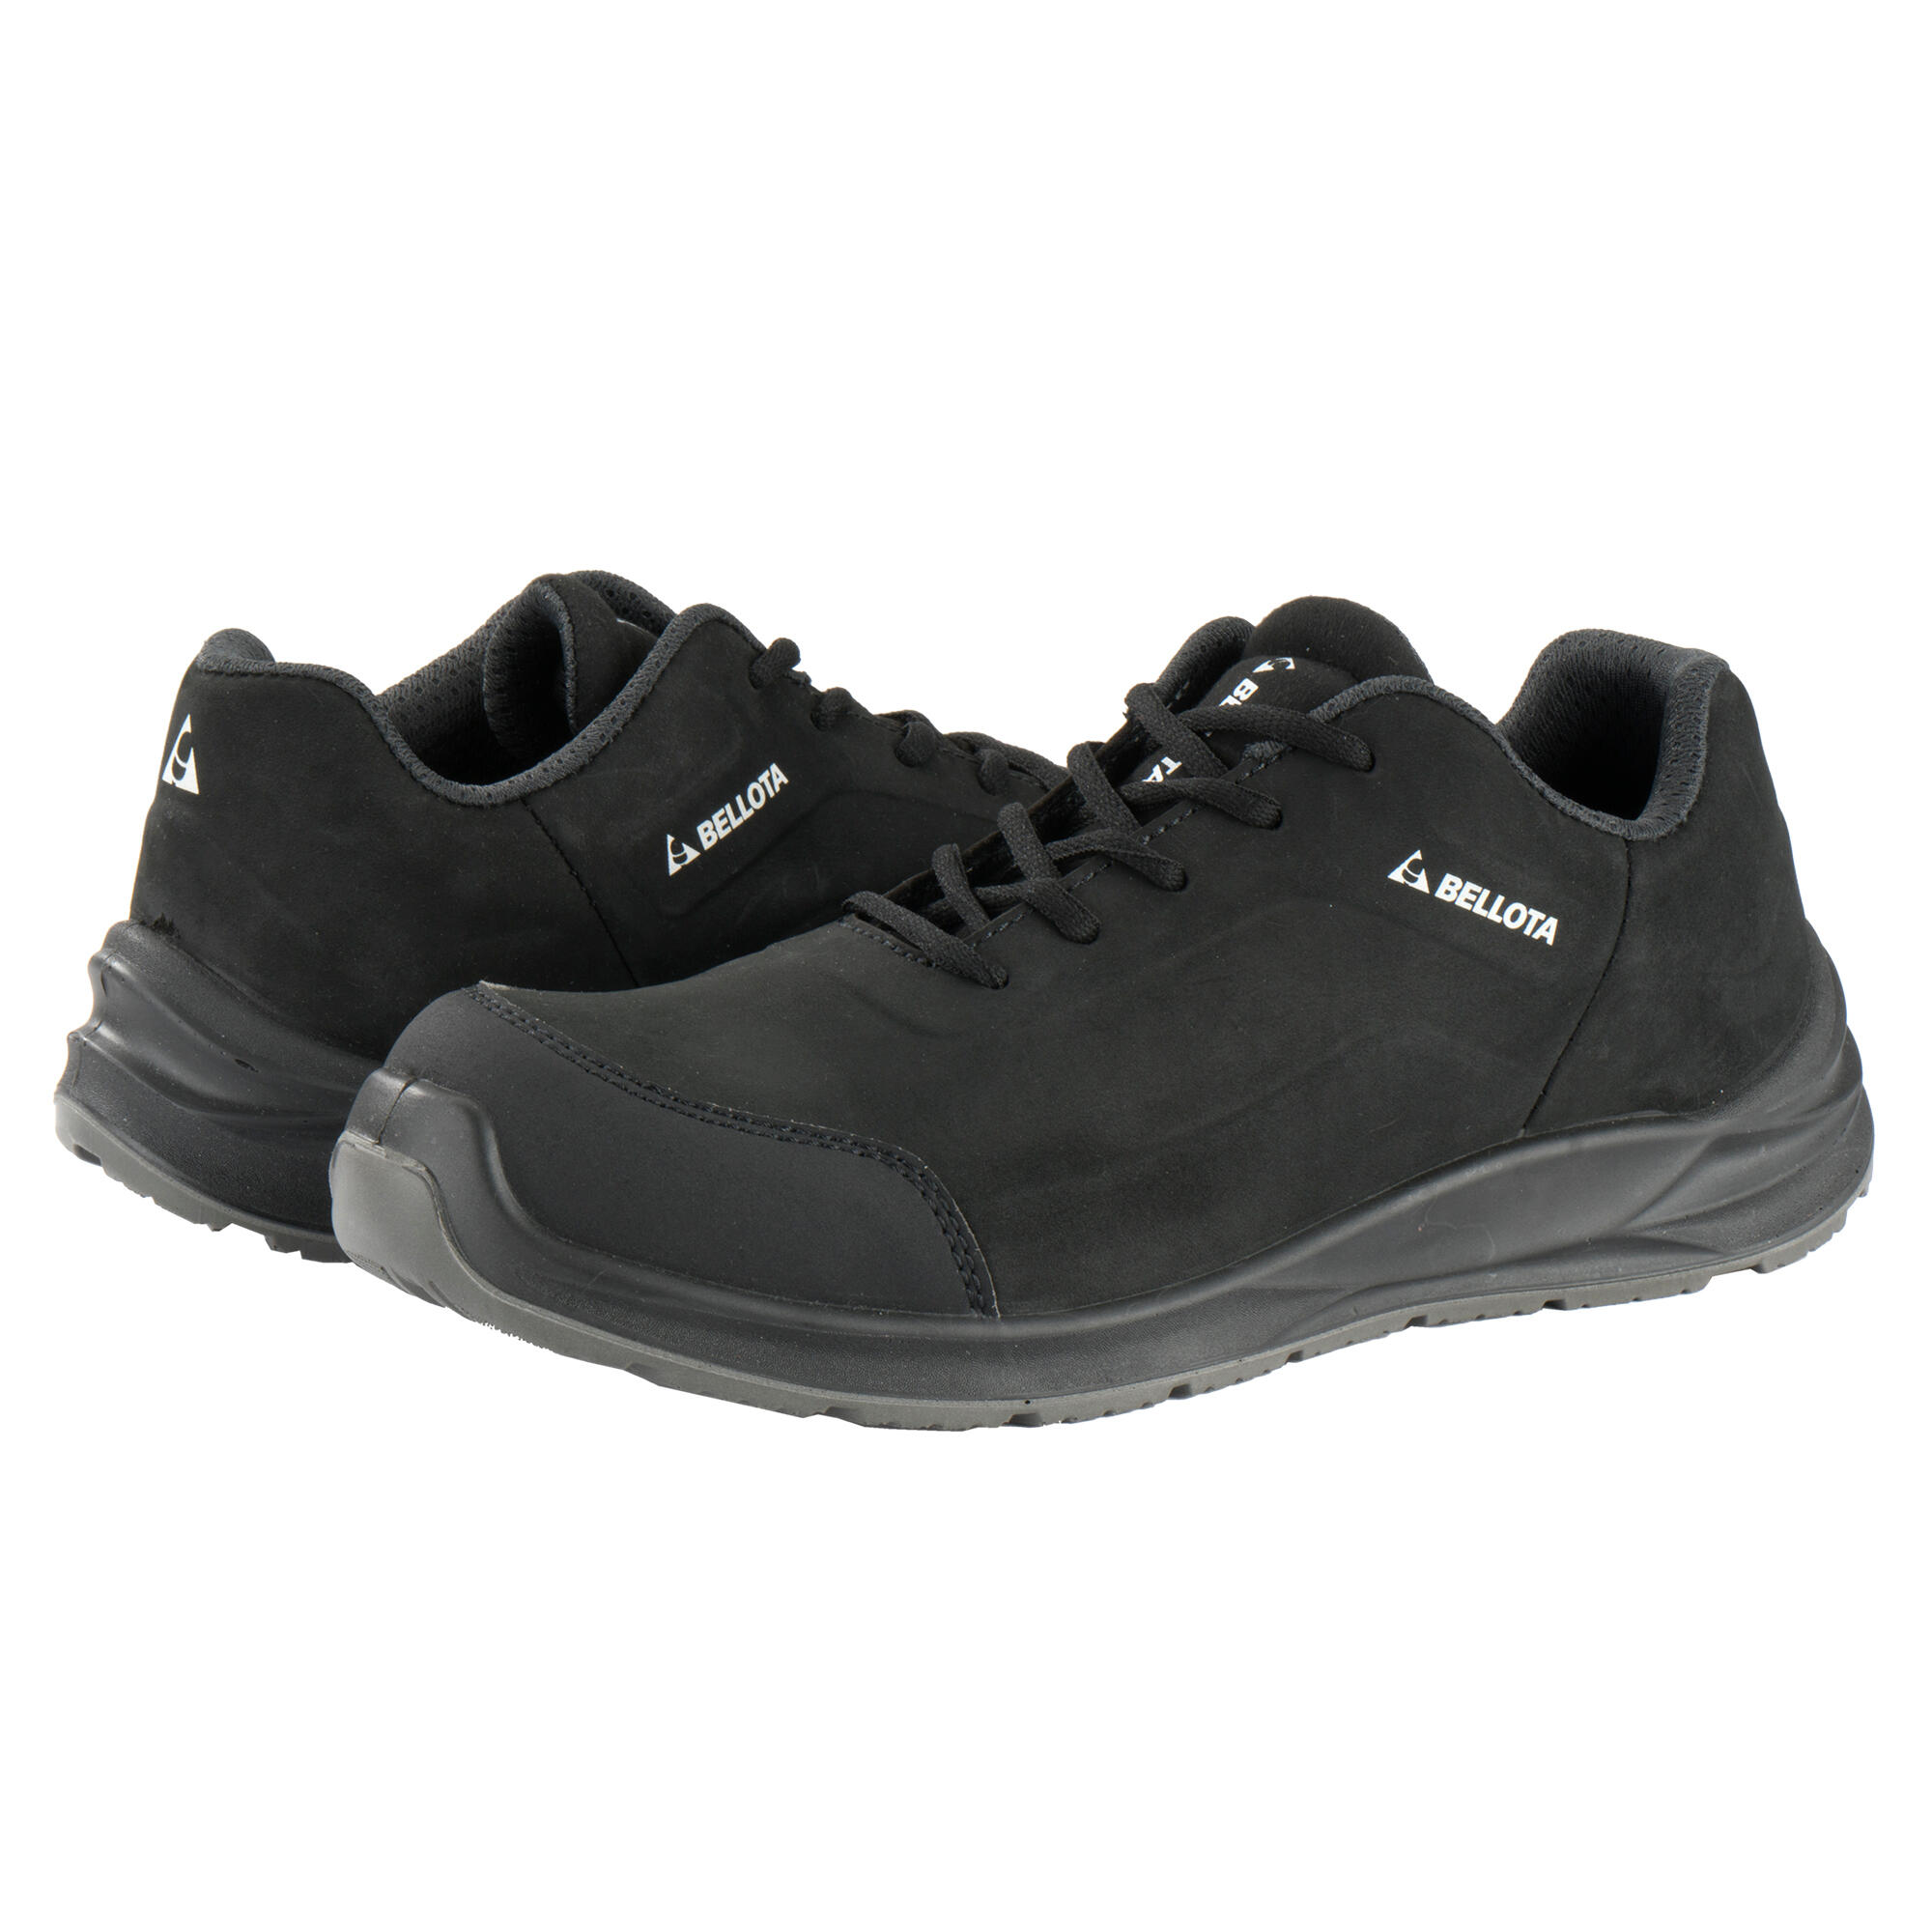 Zapatos seguridad s3 bellota flex carbón negro t41